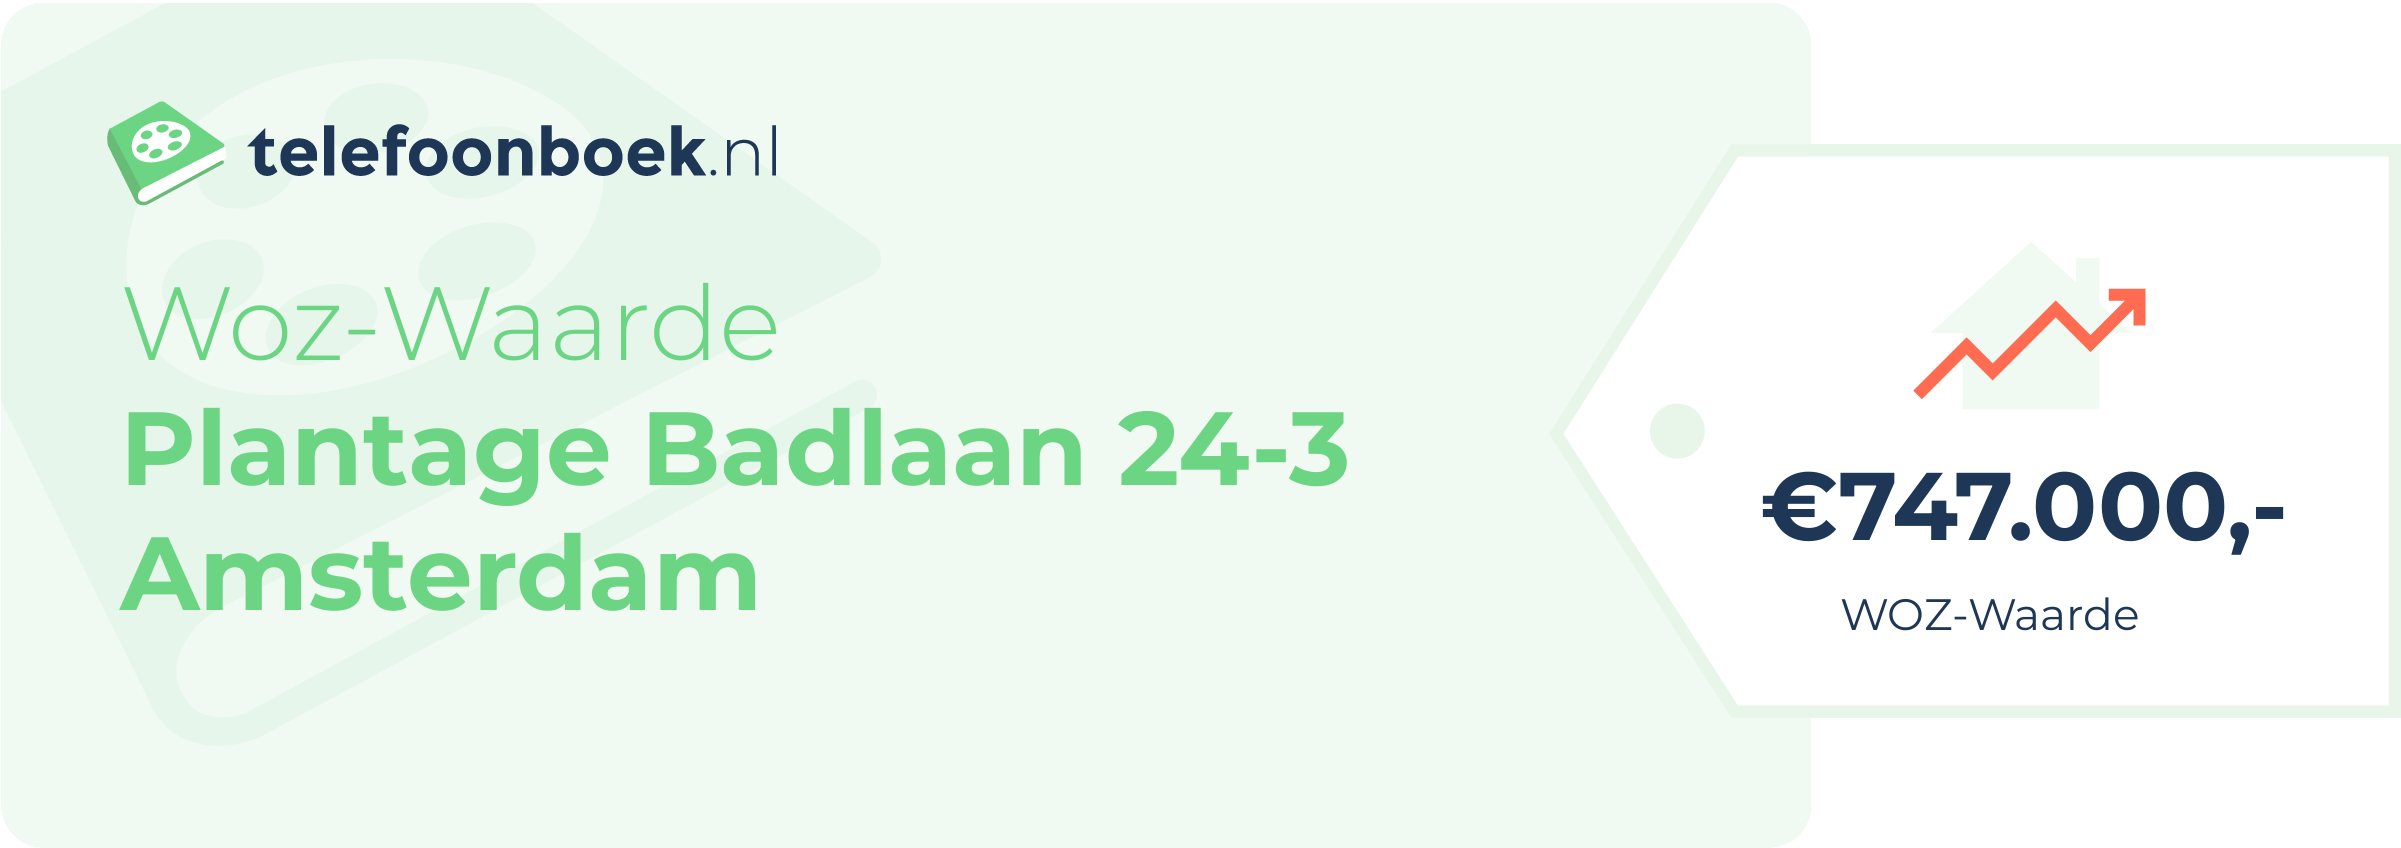 WOZ-waarde Plantage Badlaan 24-3 Amsterdam